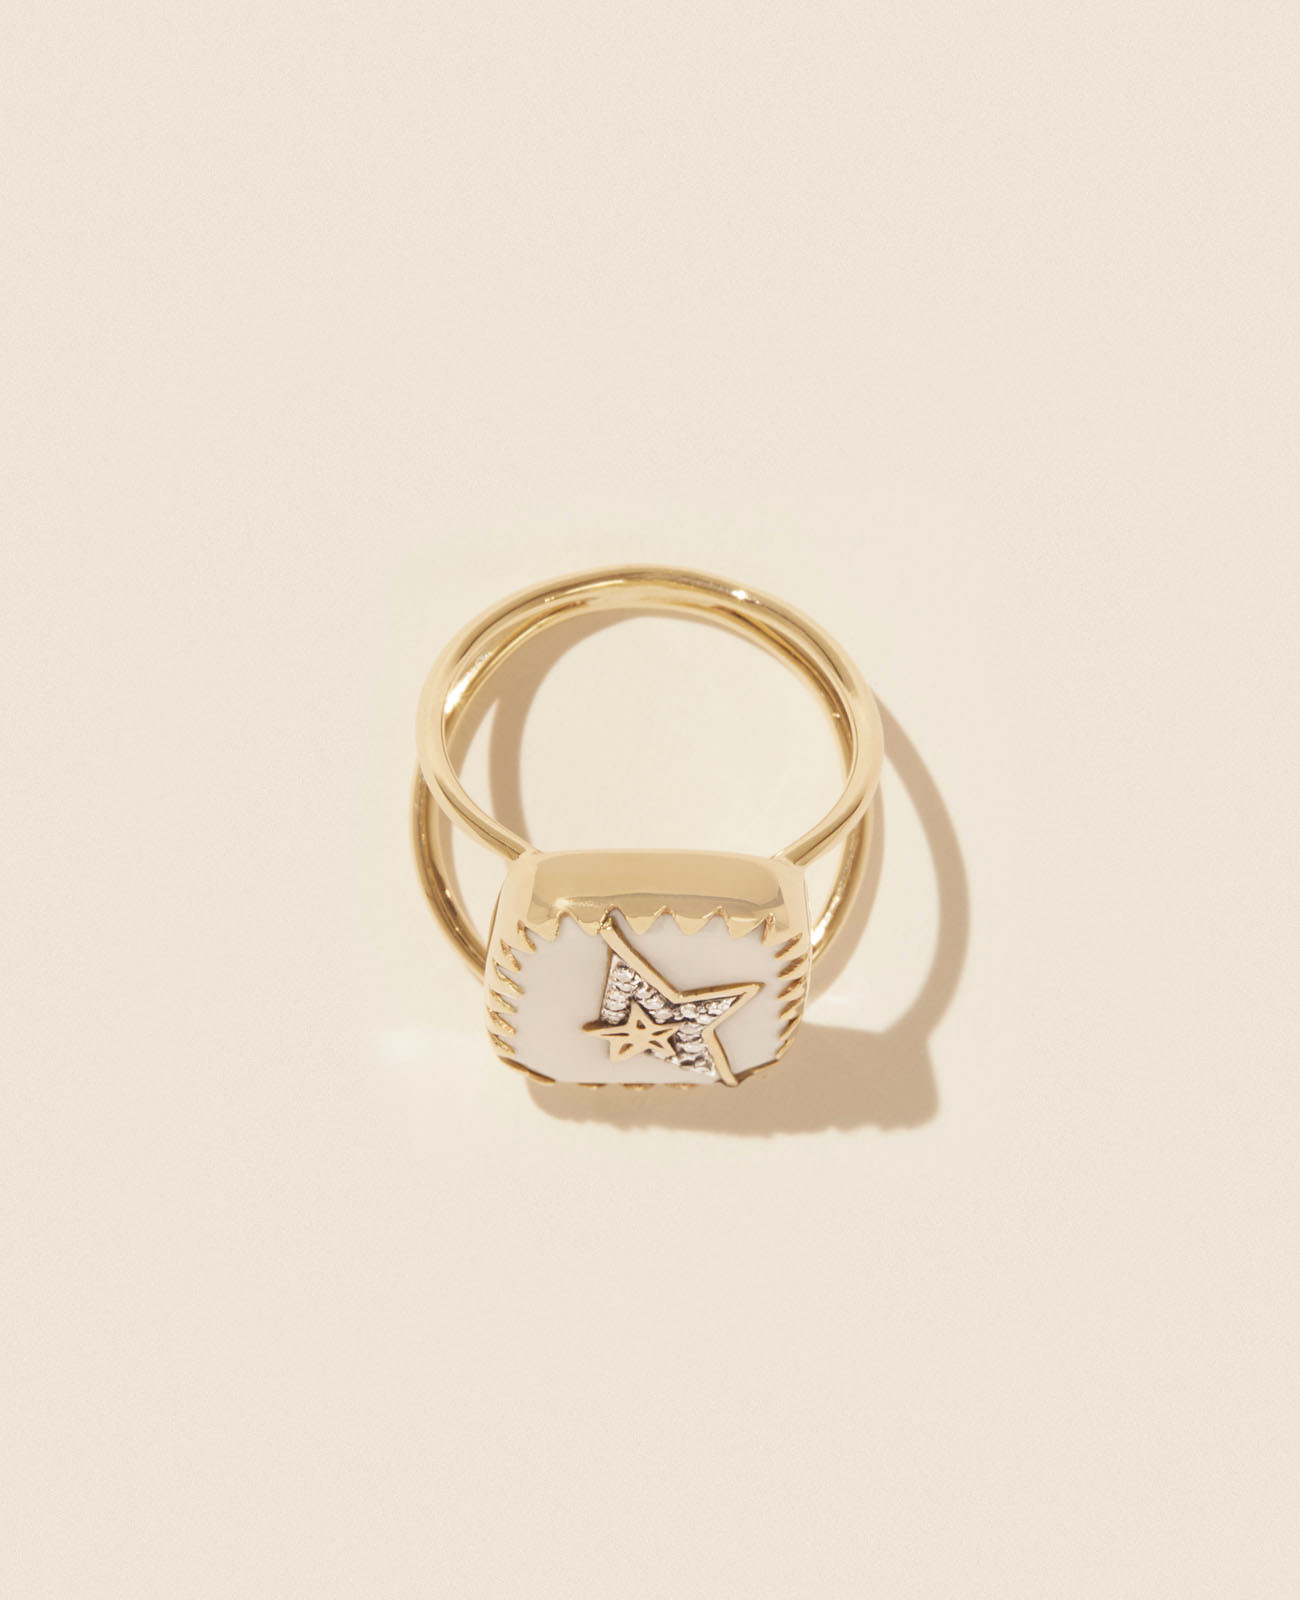 VARDA N°1 WHITE DIAMOND ring pascale monvoisin jewelry paris